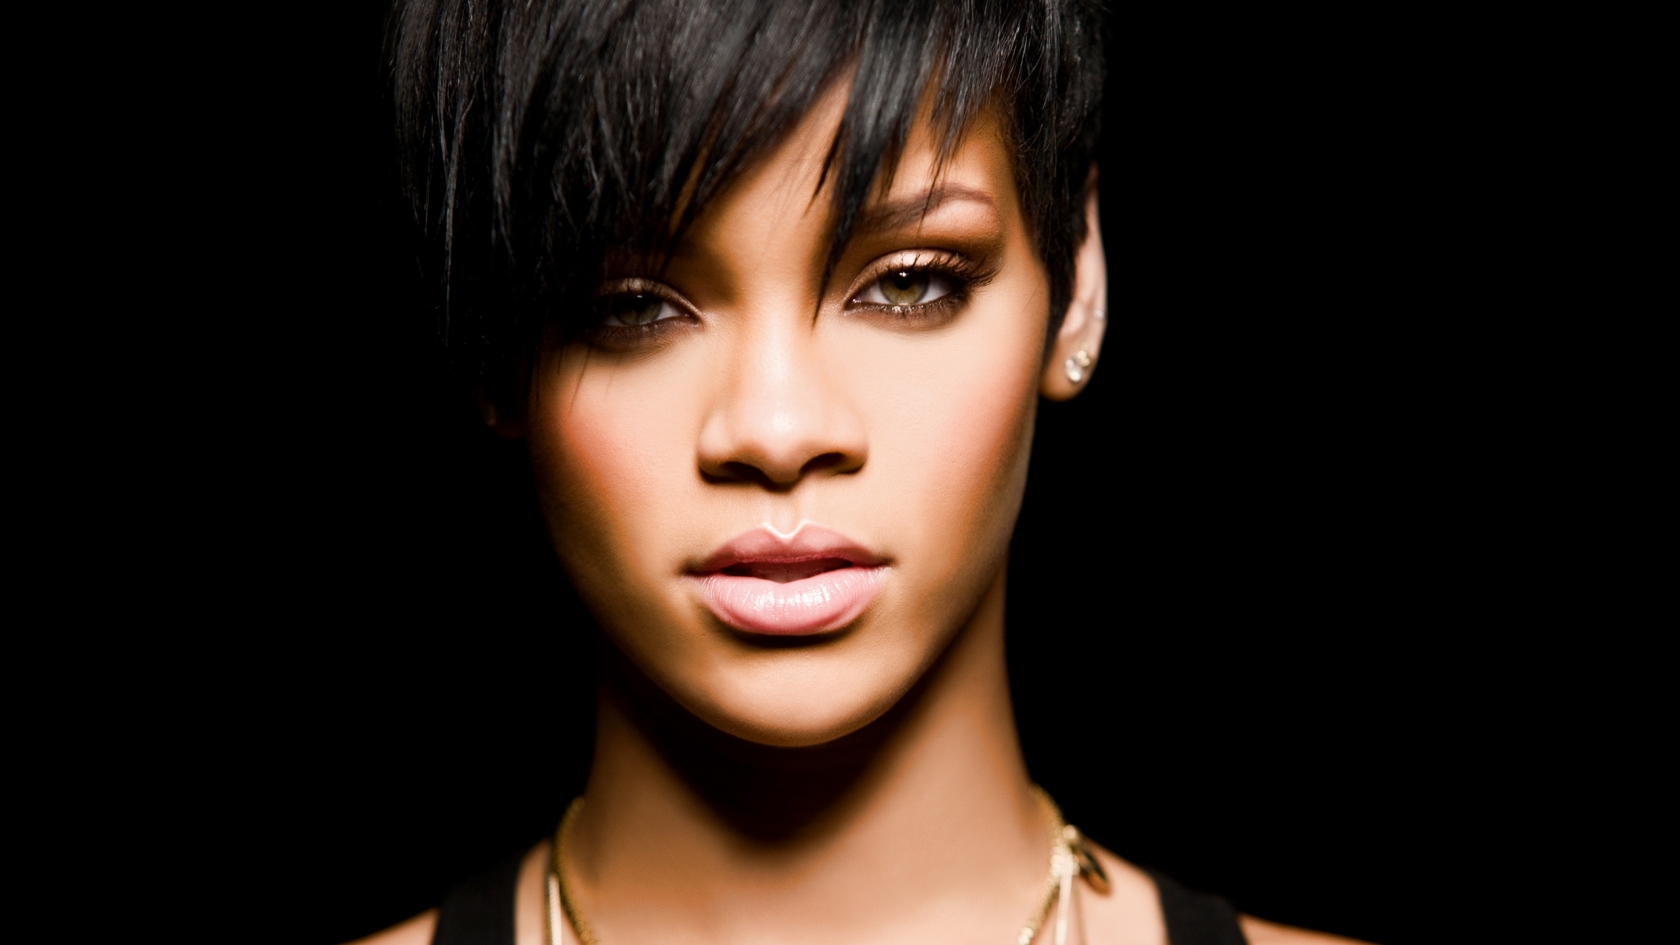 Rihanna for 1680 x 945 HDTV resolution